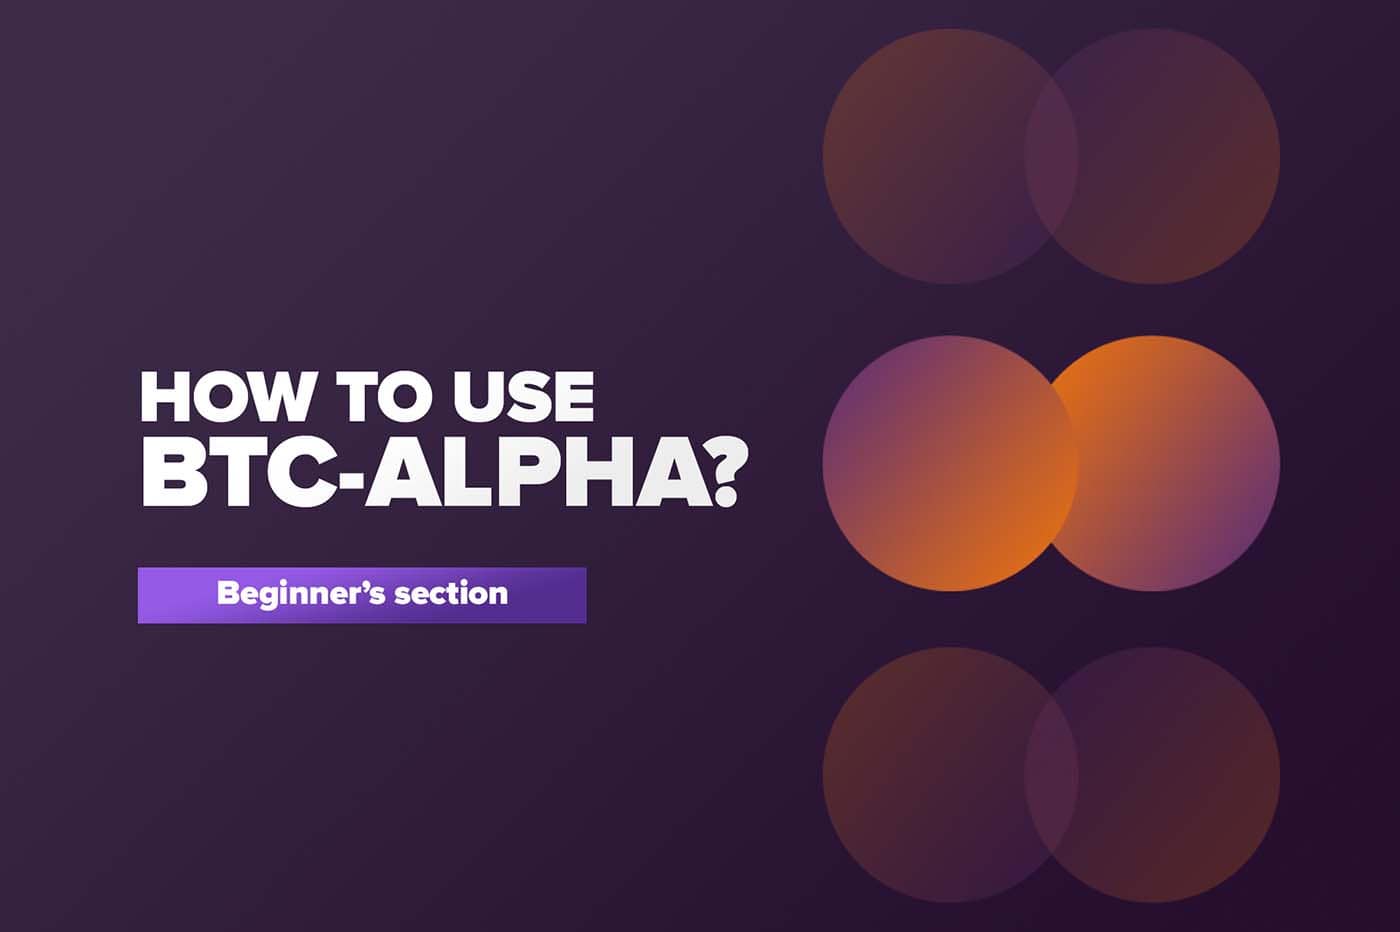 How to use BTC-ALPHA?